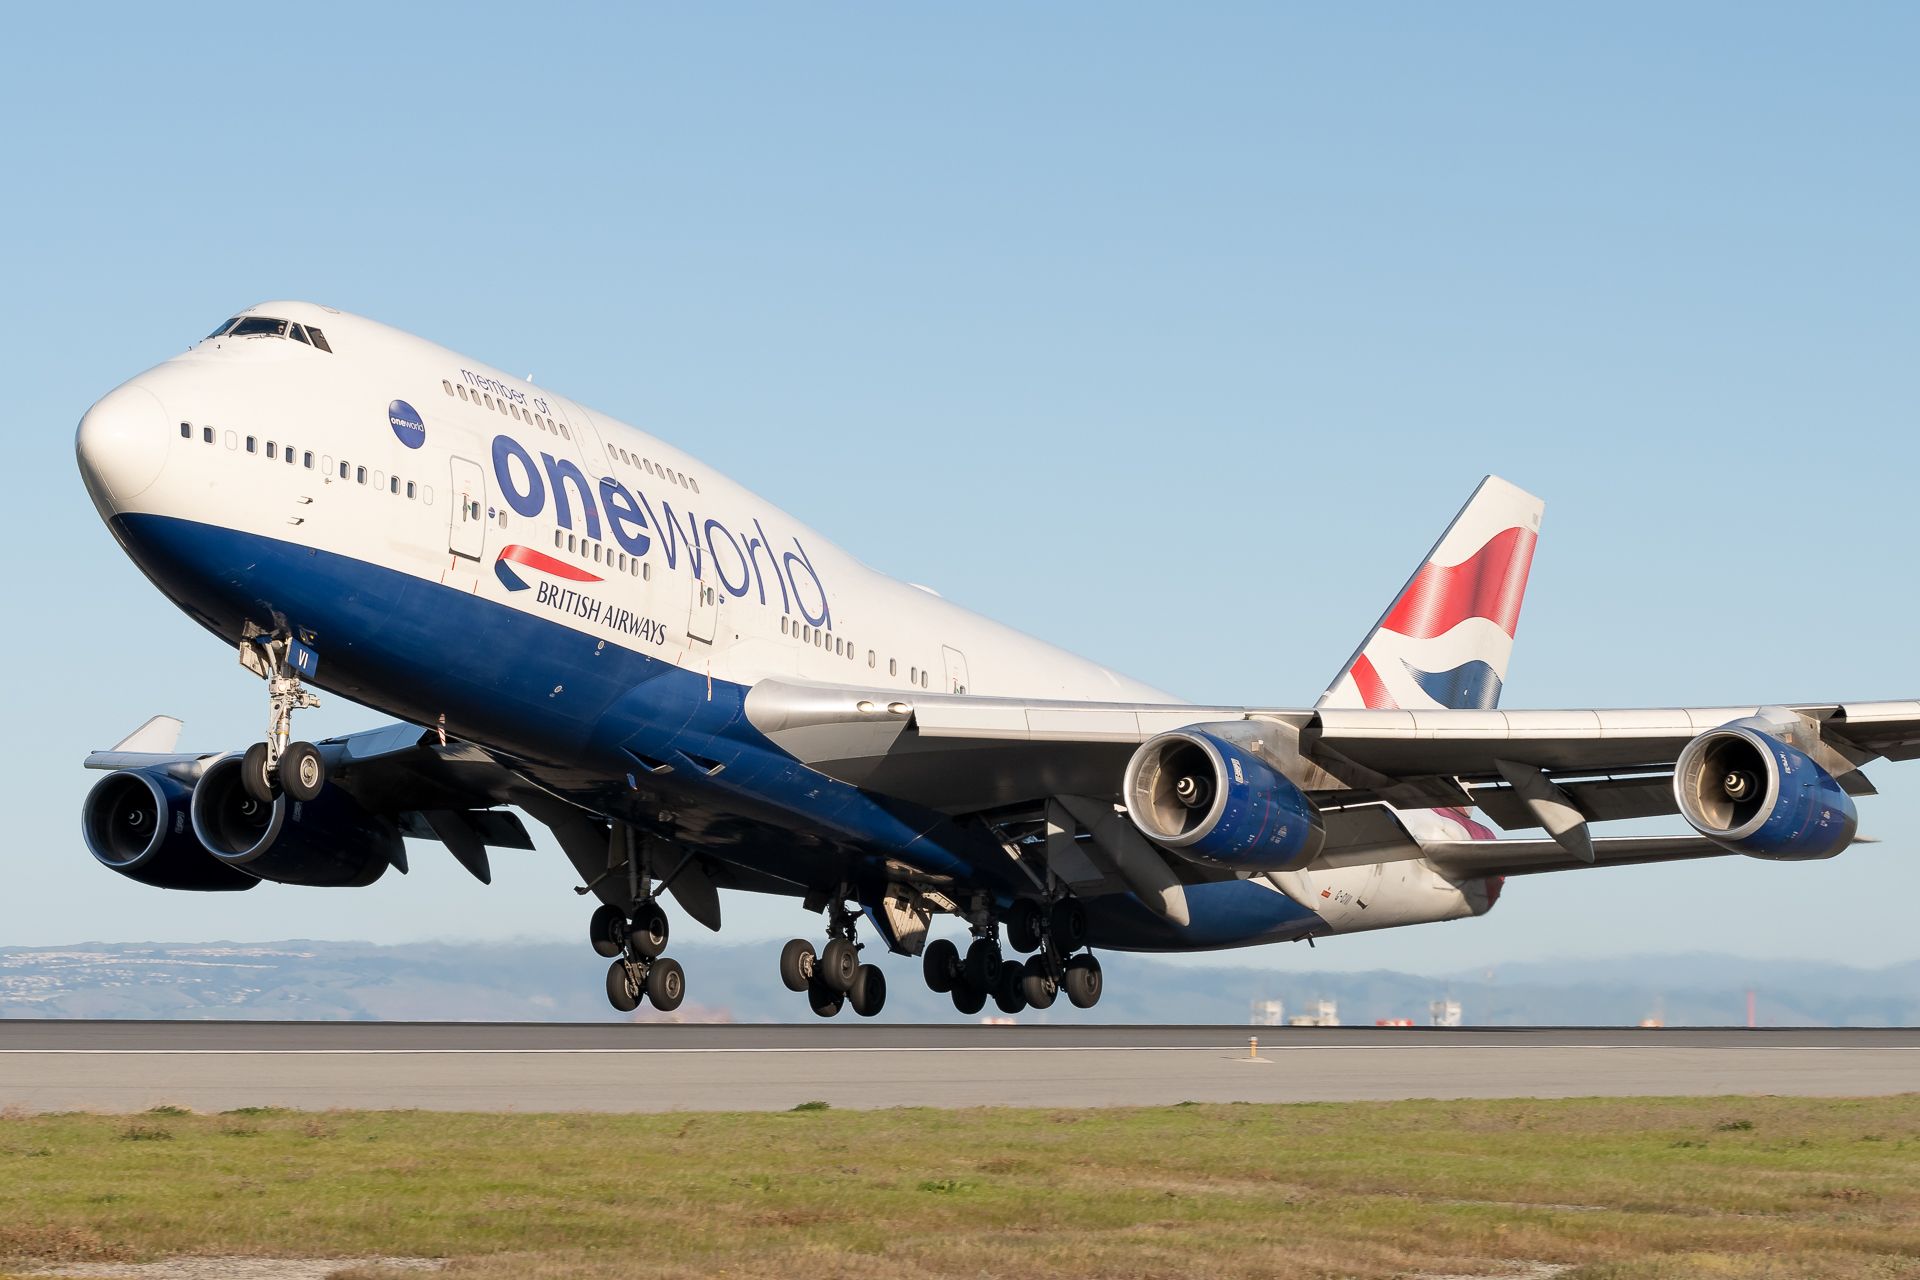 British Airways(Oneworld livery) Boeing 747-436 G-CIVI